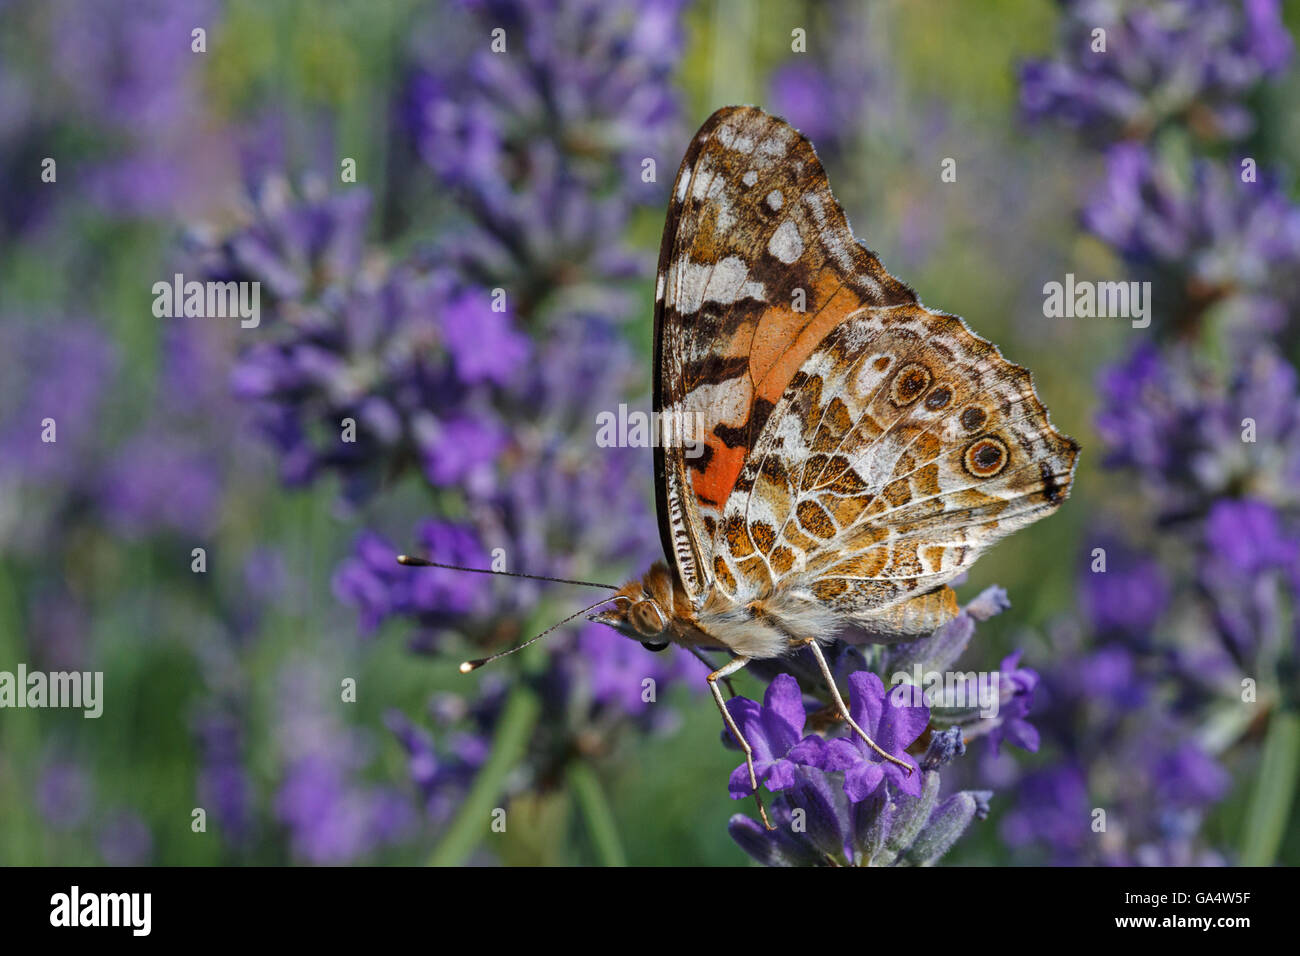 Distelfalter Schmetterling auf Lavendel Blume Stockfoto